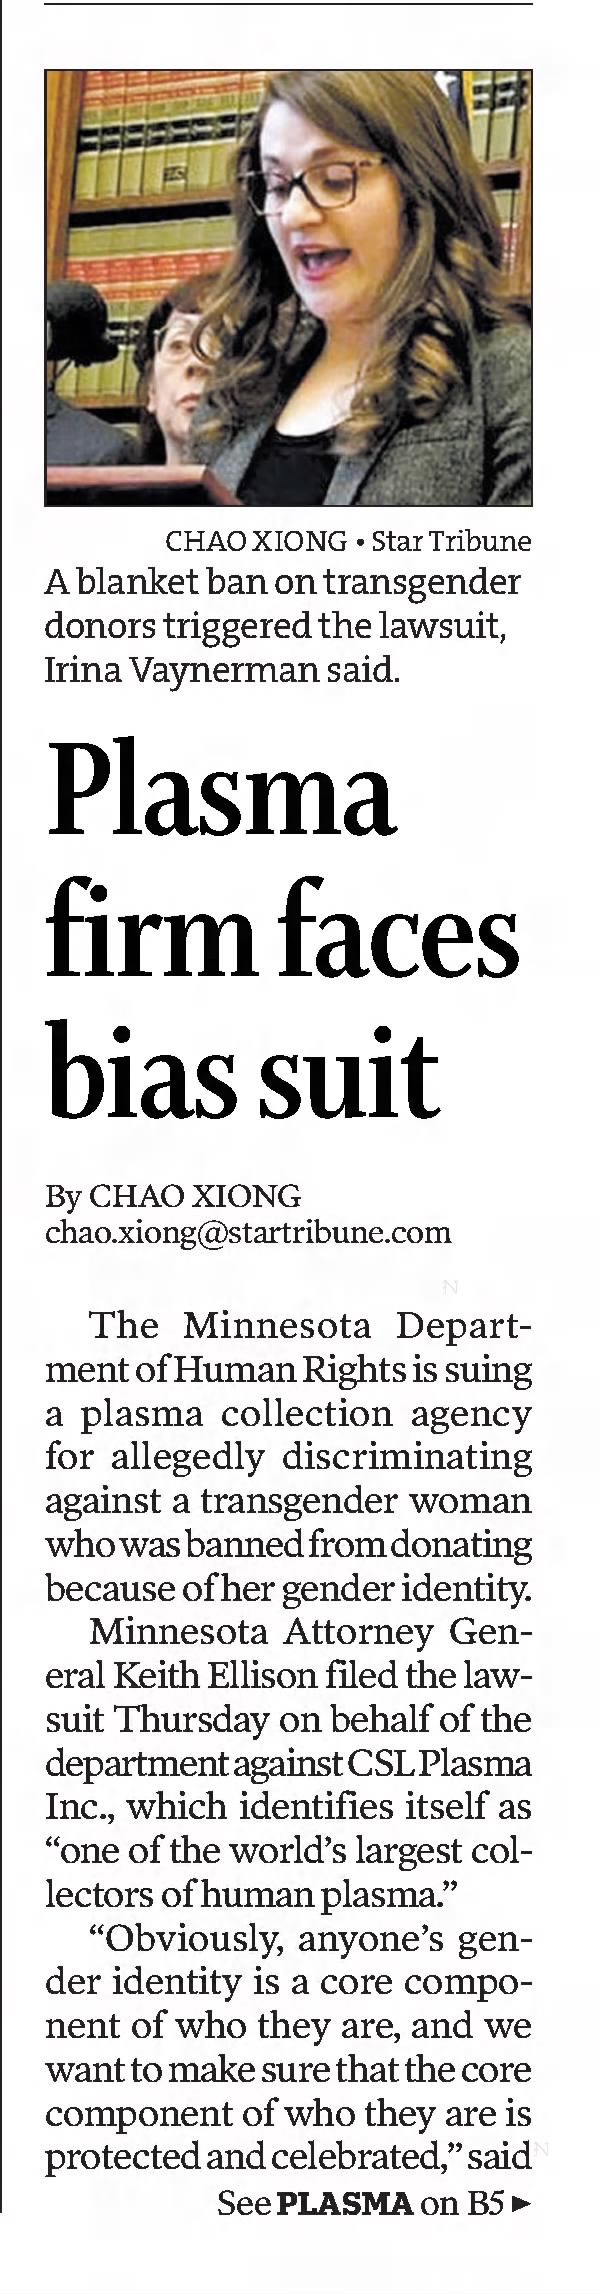 Plasma firm faces bias suit